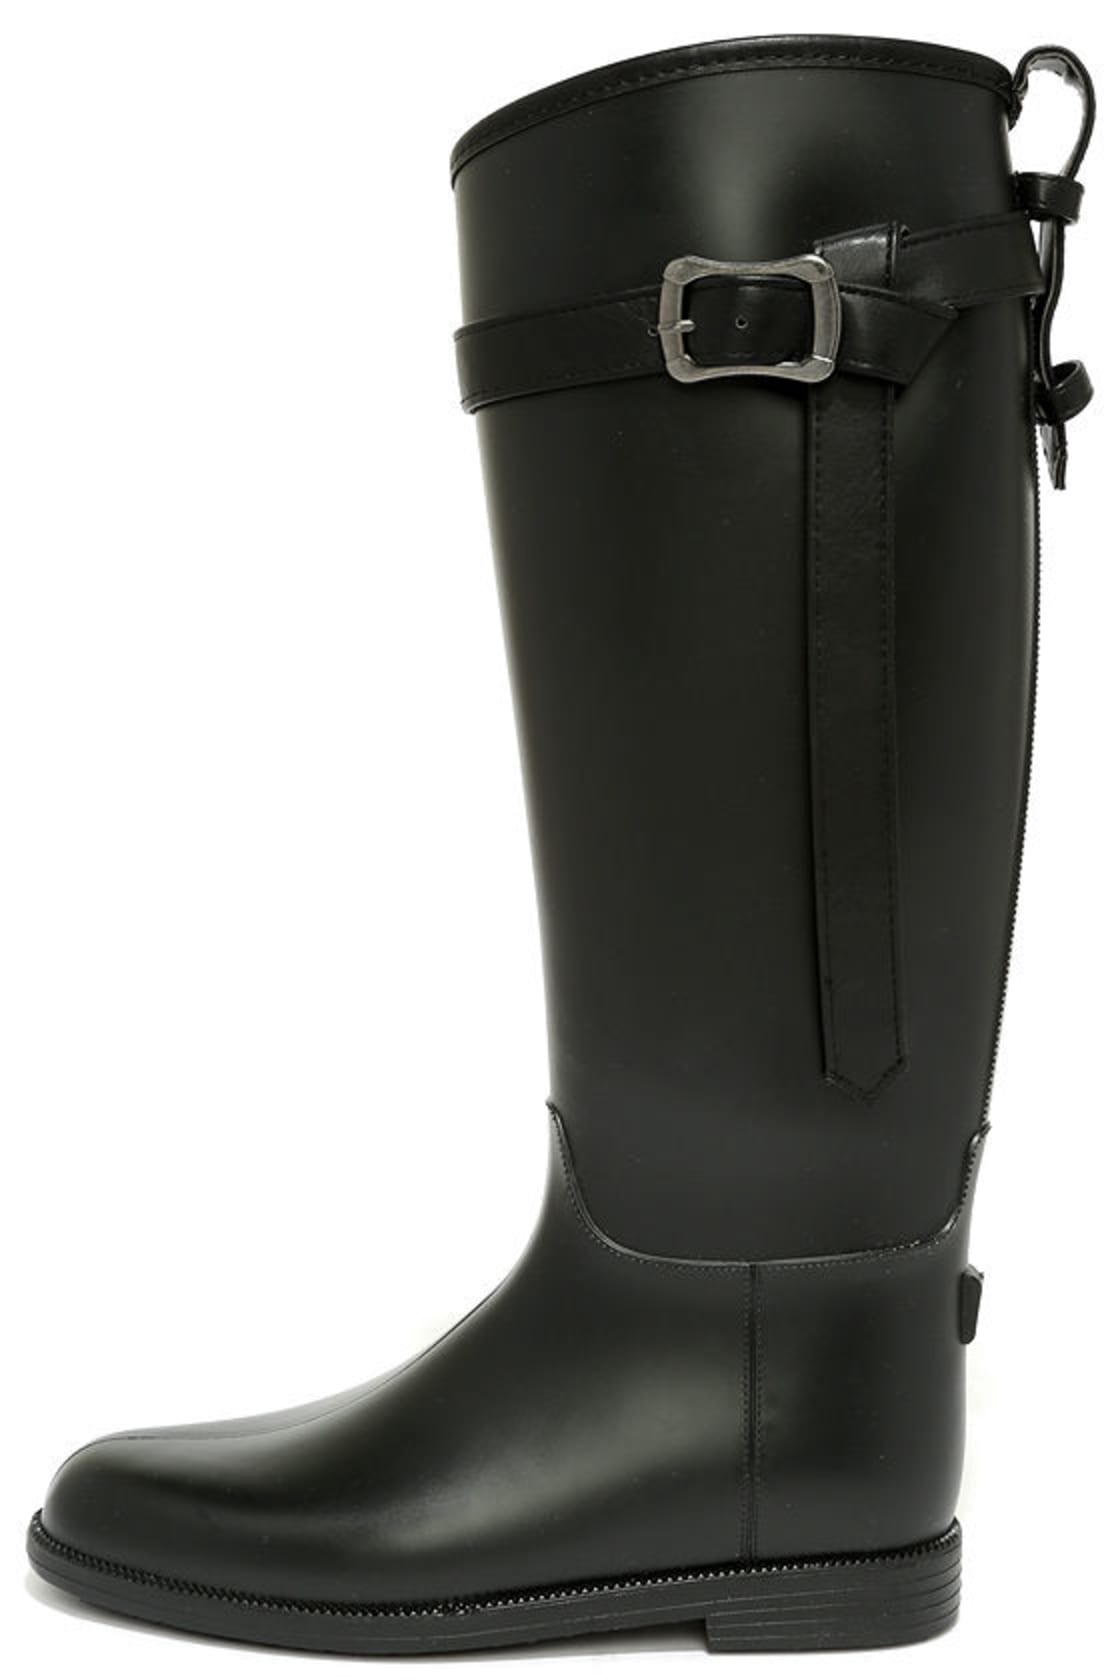 Cute Black Rain Boots - Tall Rain Boots - Cute Rain Boots - $49.00 - Lulus